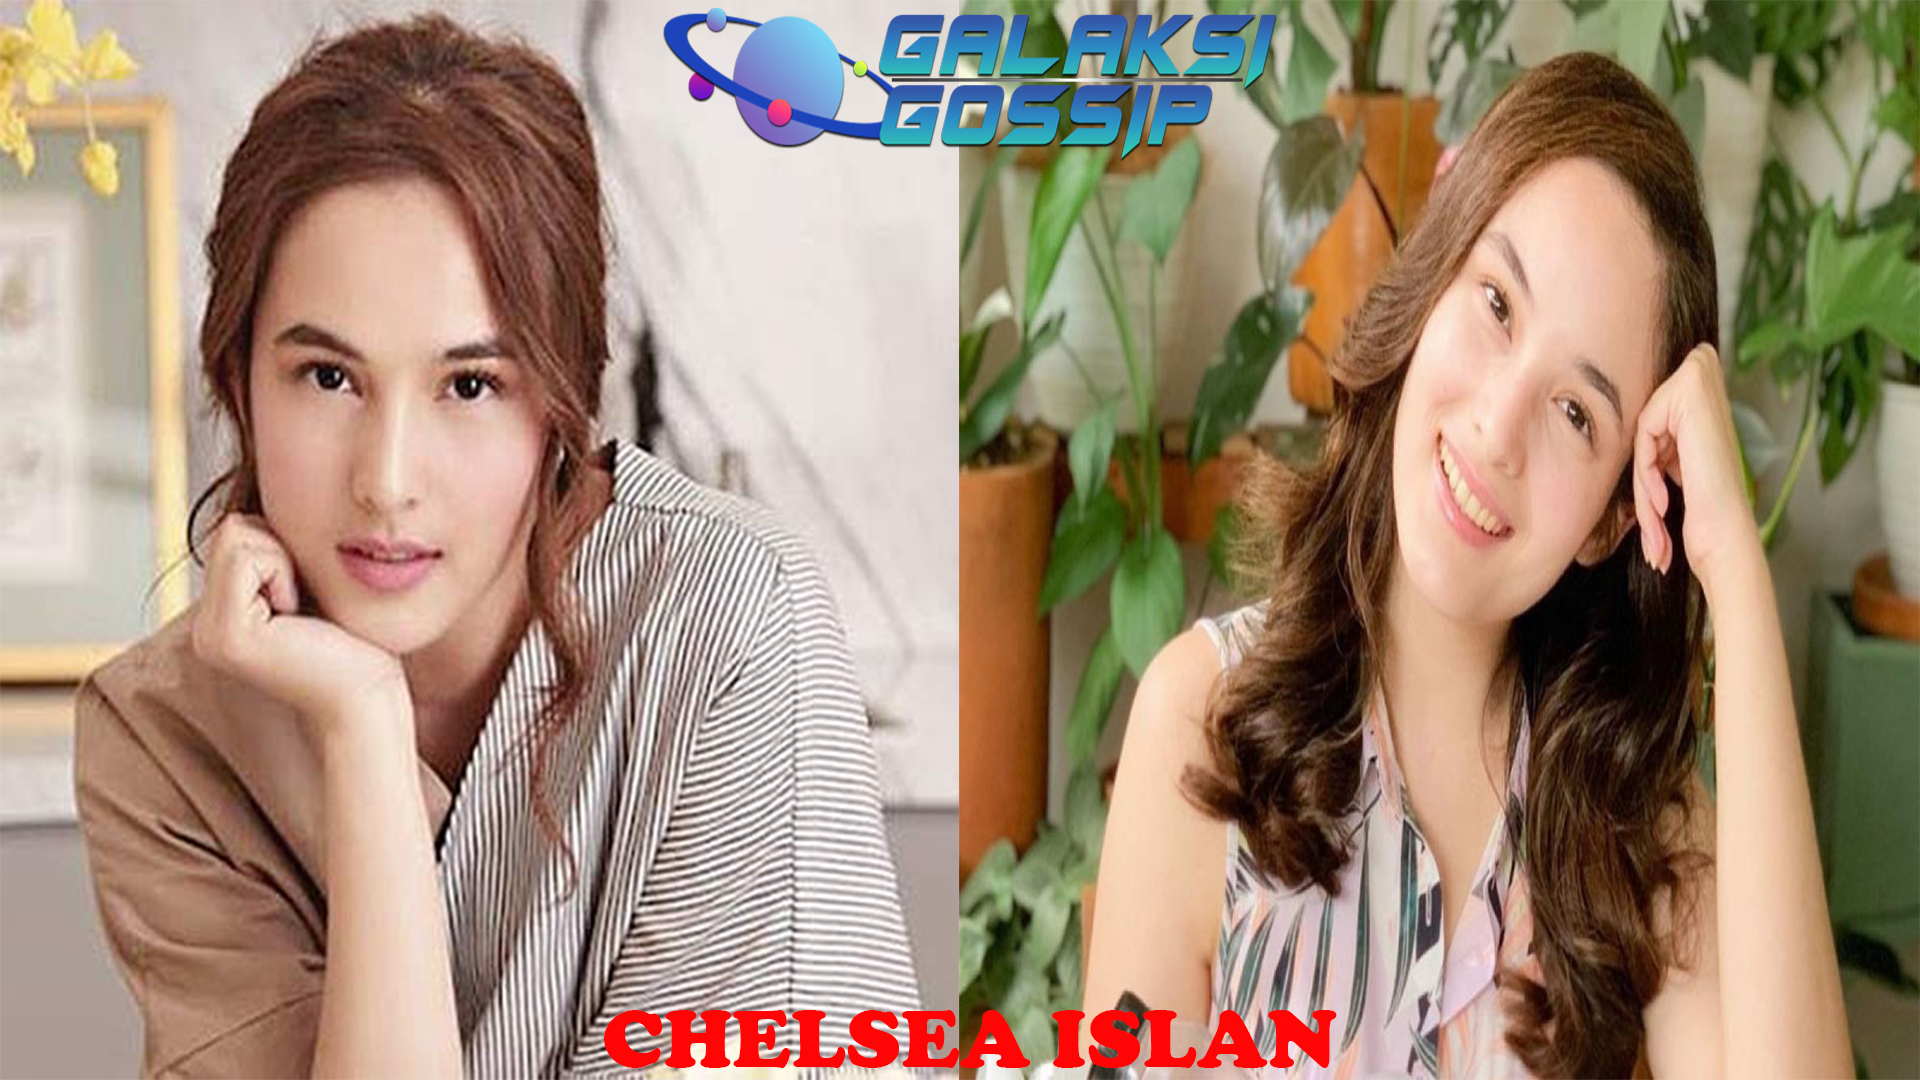 Chelsea Islan Karier Seorang Aktris Indonesia yang Berbakat